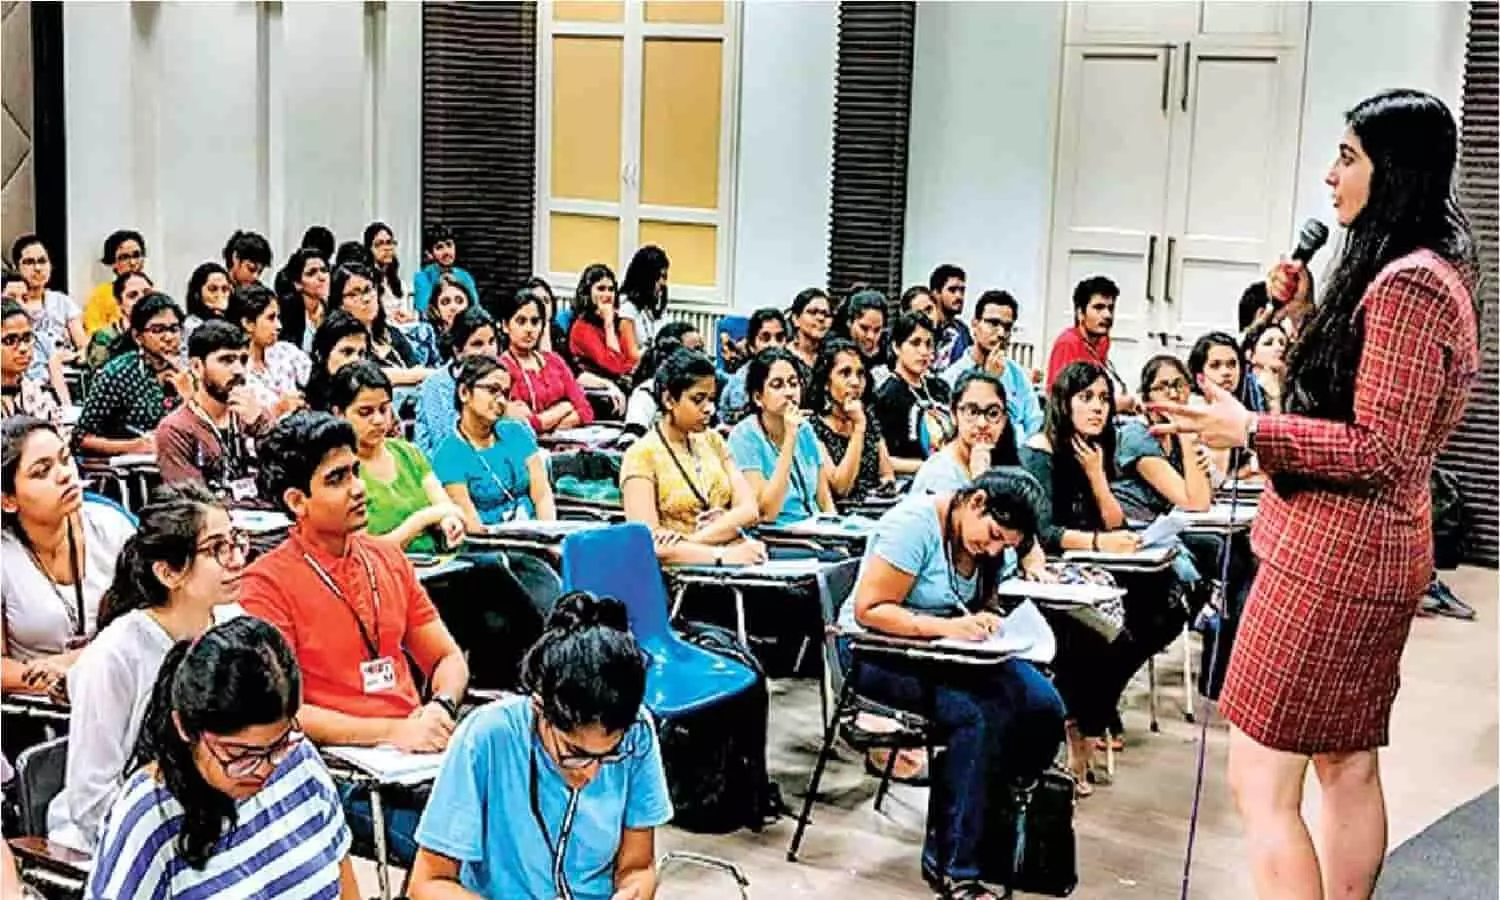 CHSE Odisha +2 12th Result 2022 DECLARED: ओडिशा में कक्षा 12 वीं विज्ञान और वाणिज्य का रिजल्ट देखने के लिए ये रहा Link